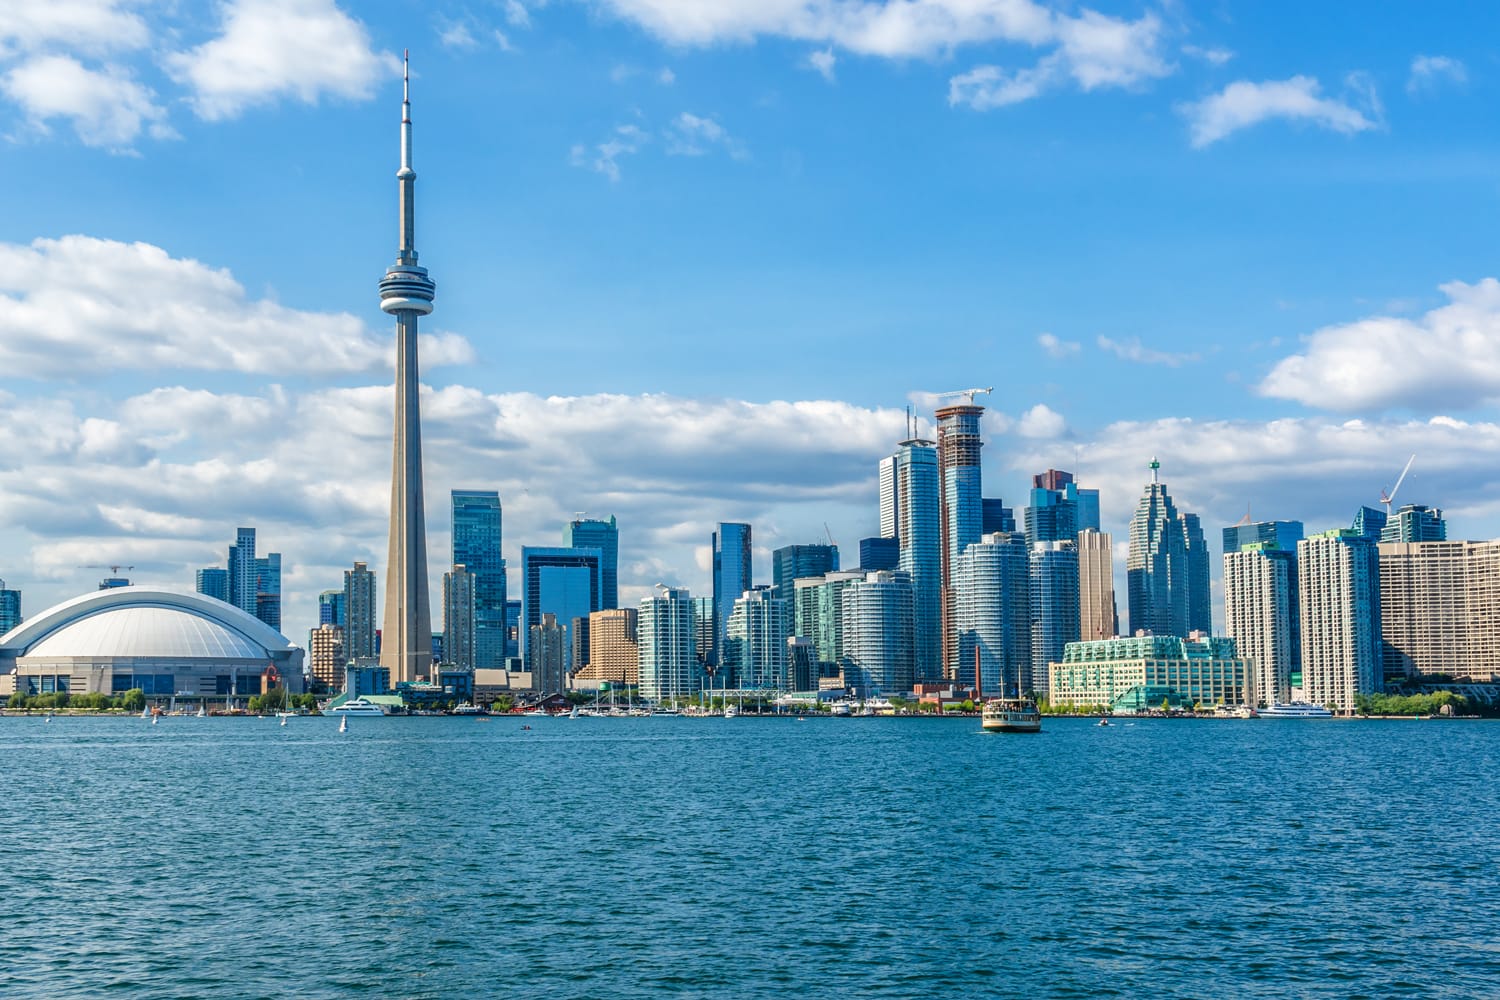 The beautiful Toronto's skyline over Lake Ontario.